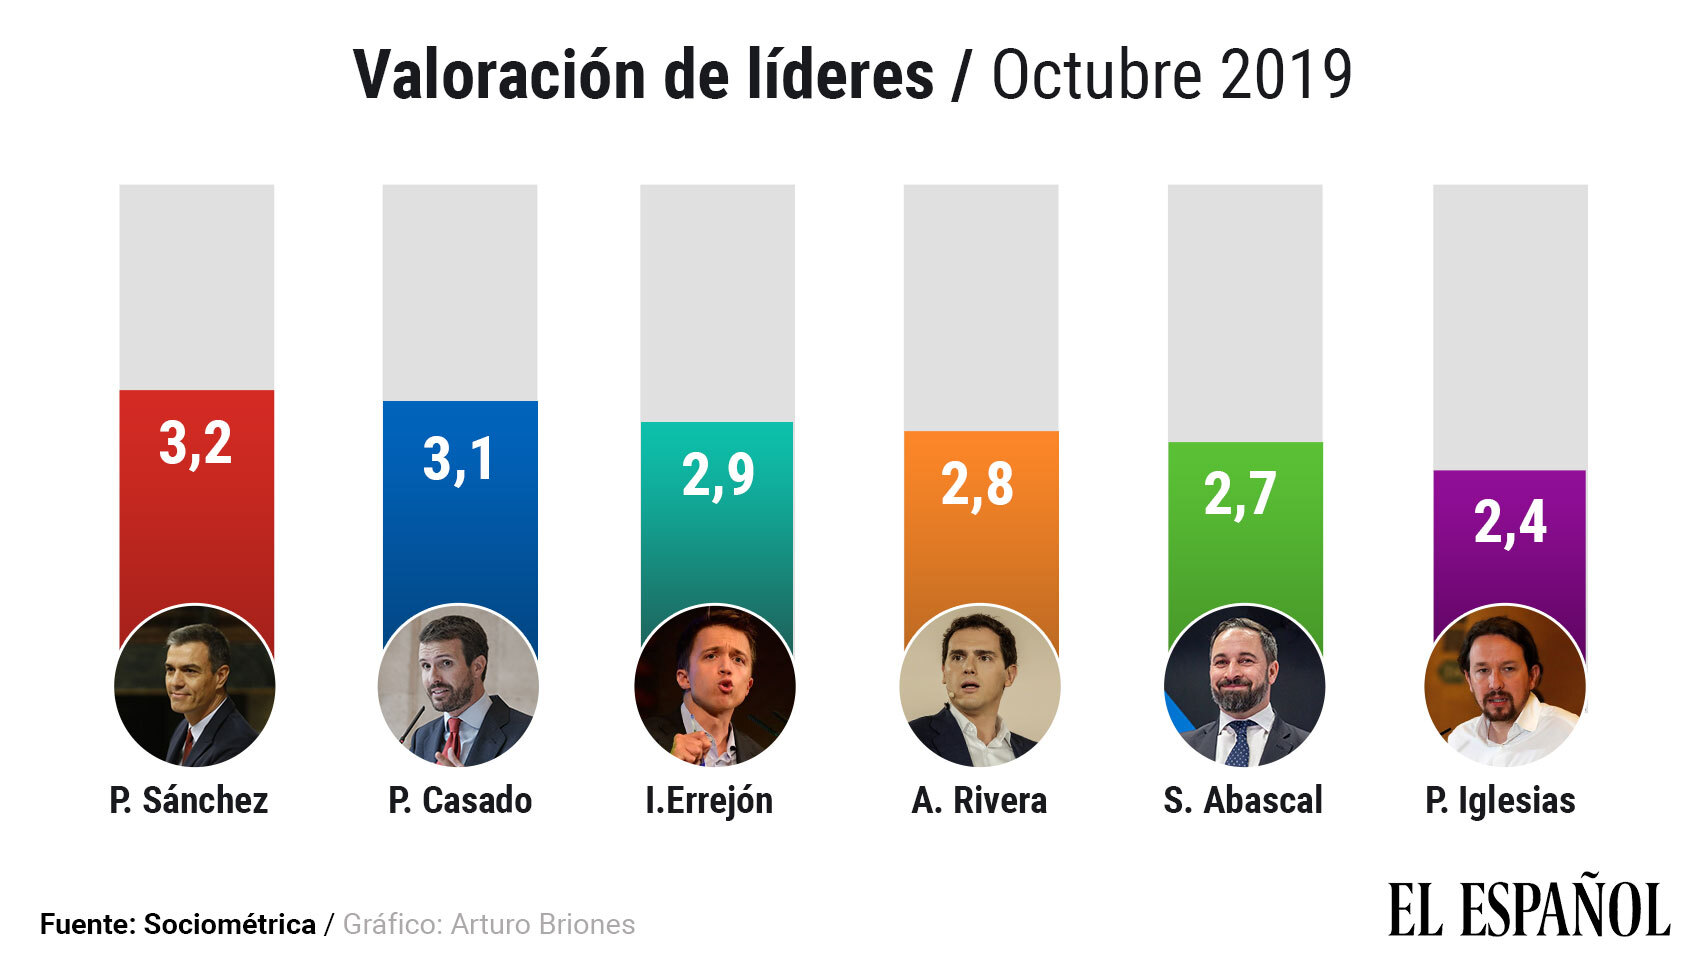 Valoración de los líderes en octubre de 2019.